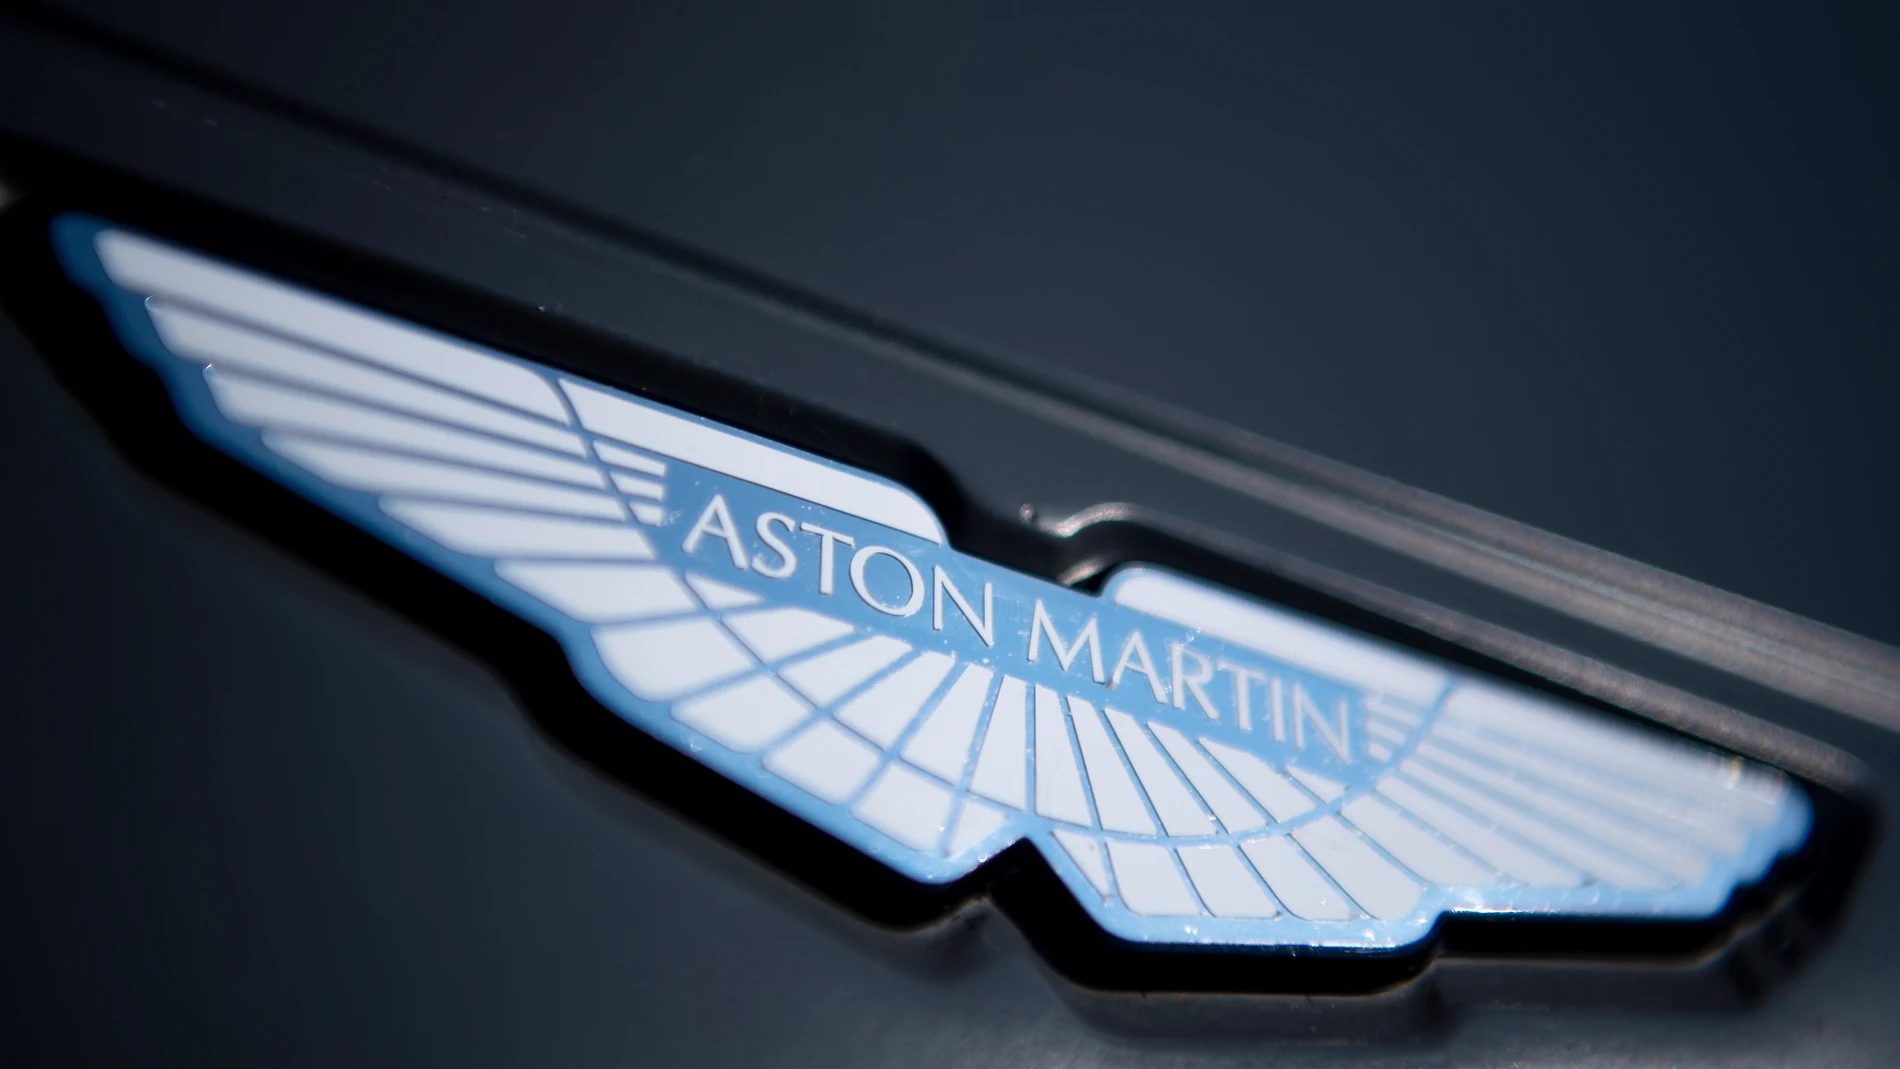 El símbolo de Aston Martin (nueva escudería de Fernando Alonso) está formada por unas alas